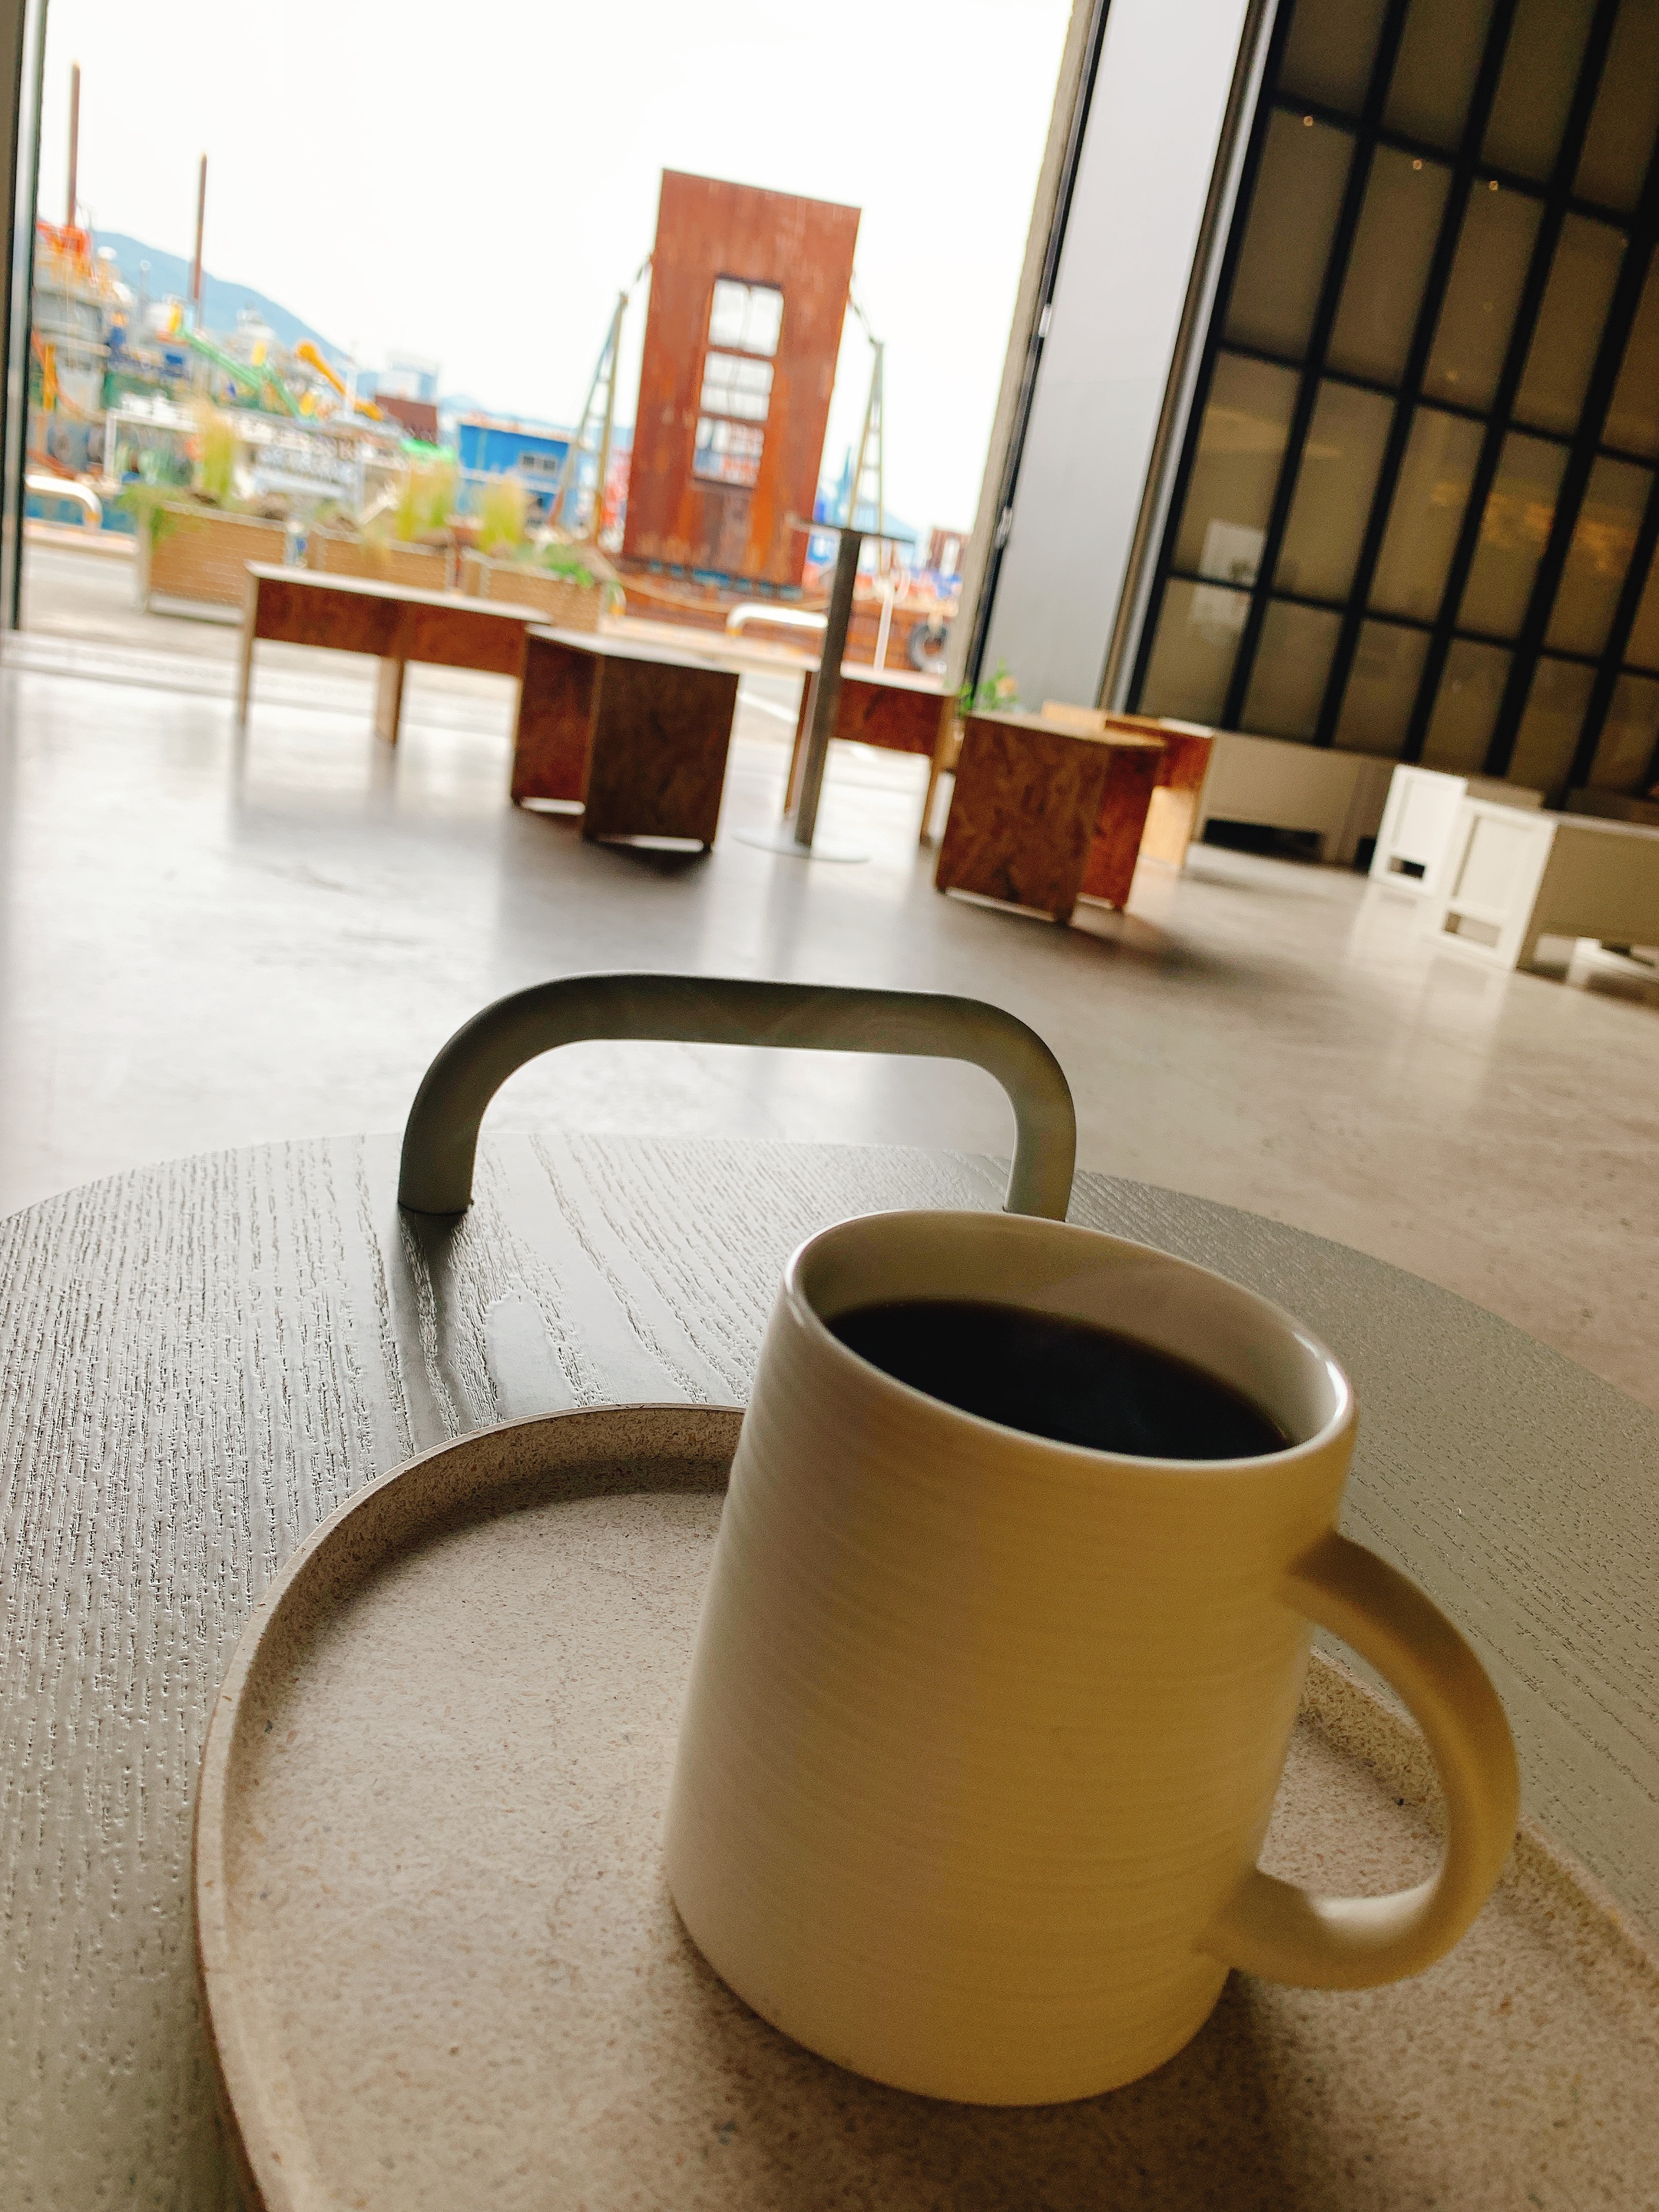 항구를 배경으로 커피 한 잔이 테이블 위에 놓여 있다.